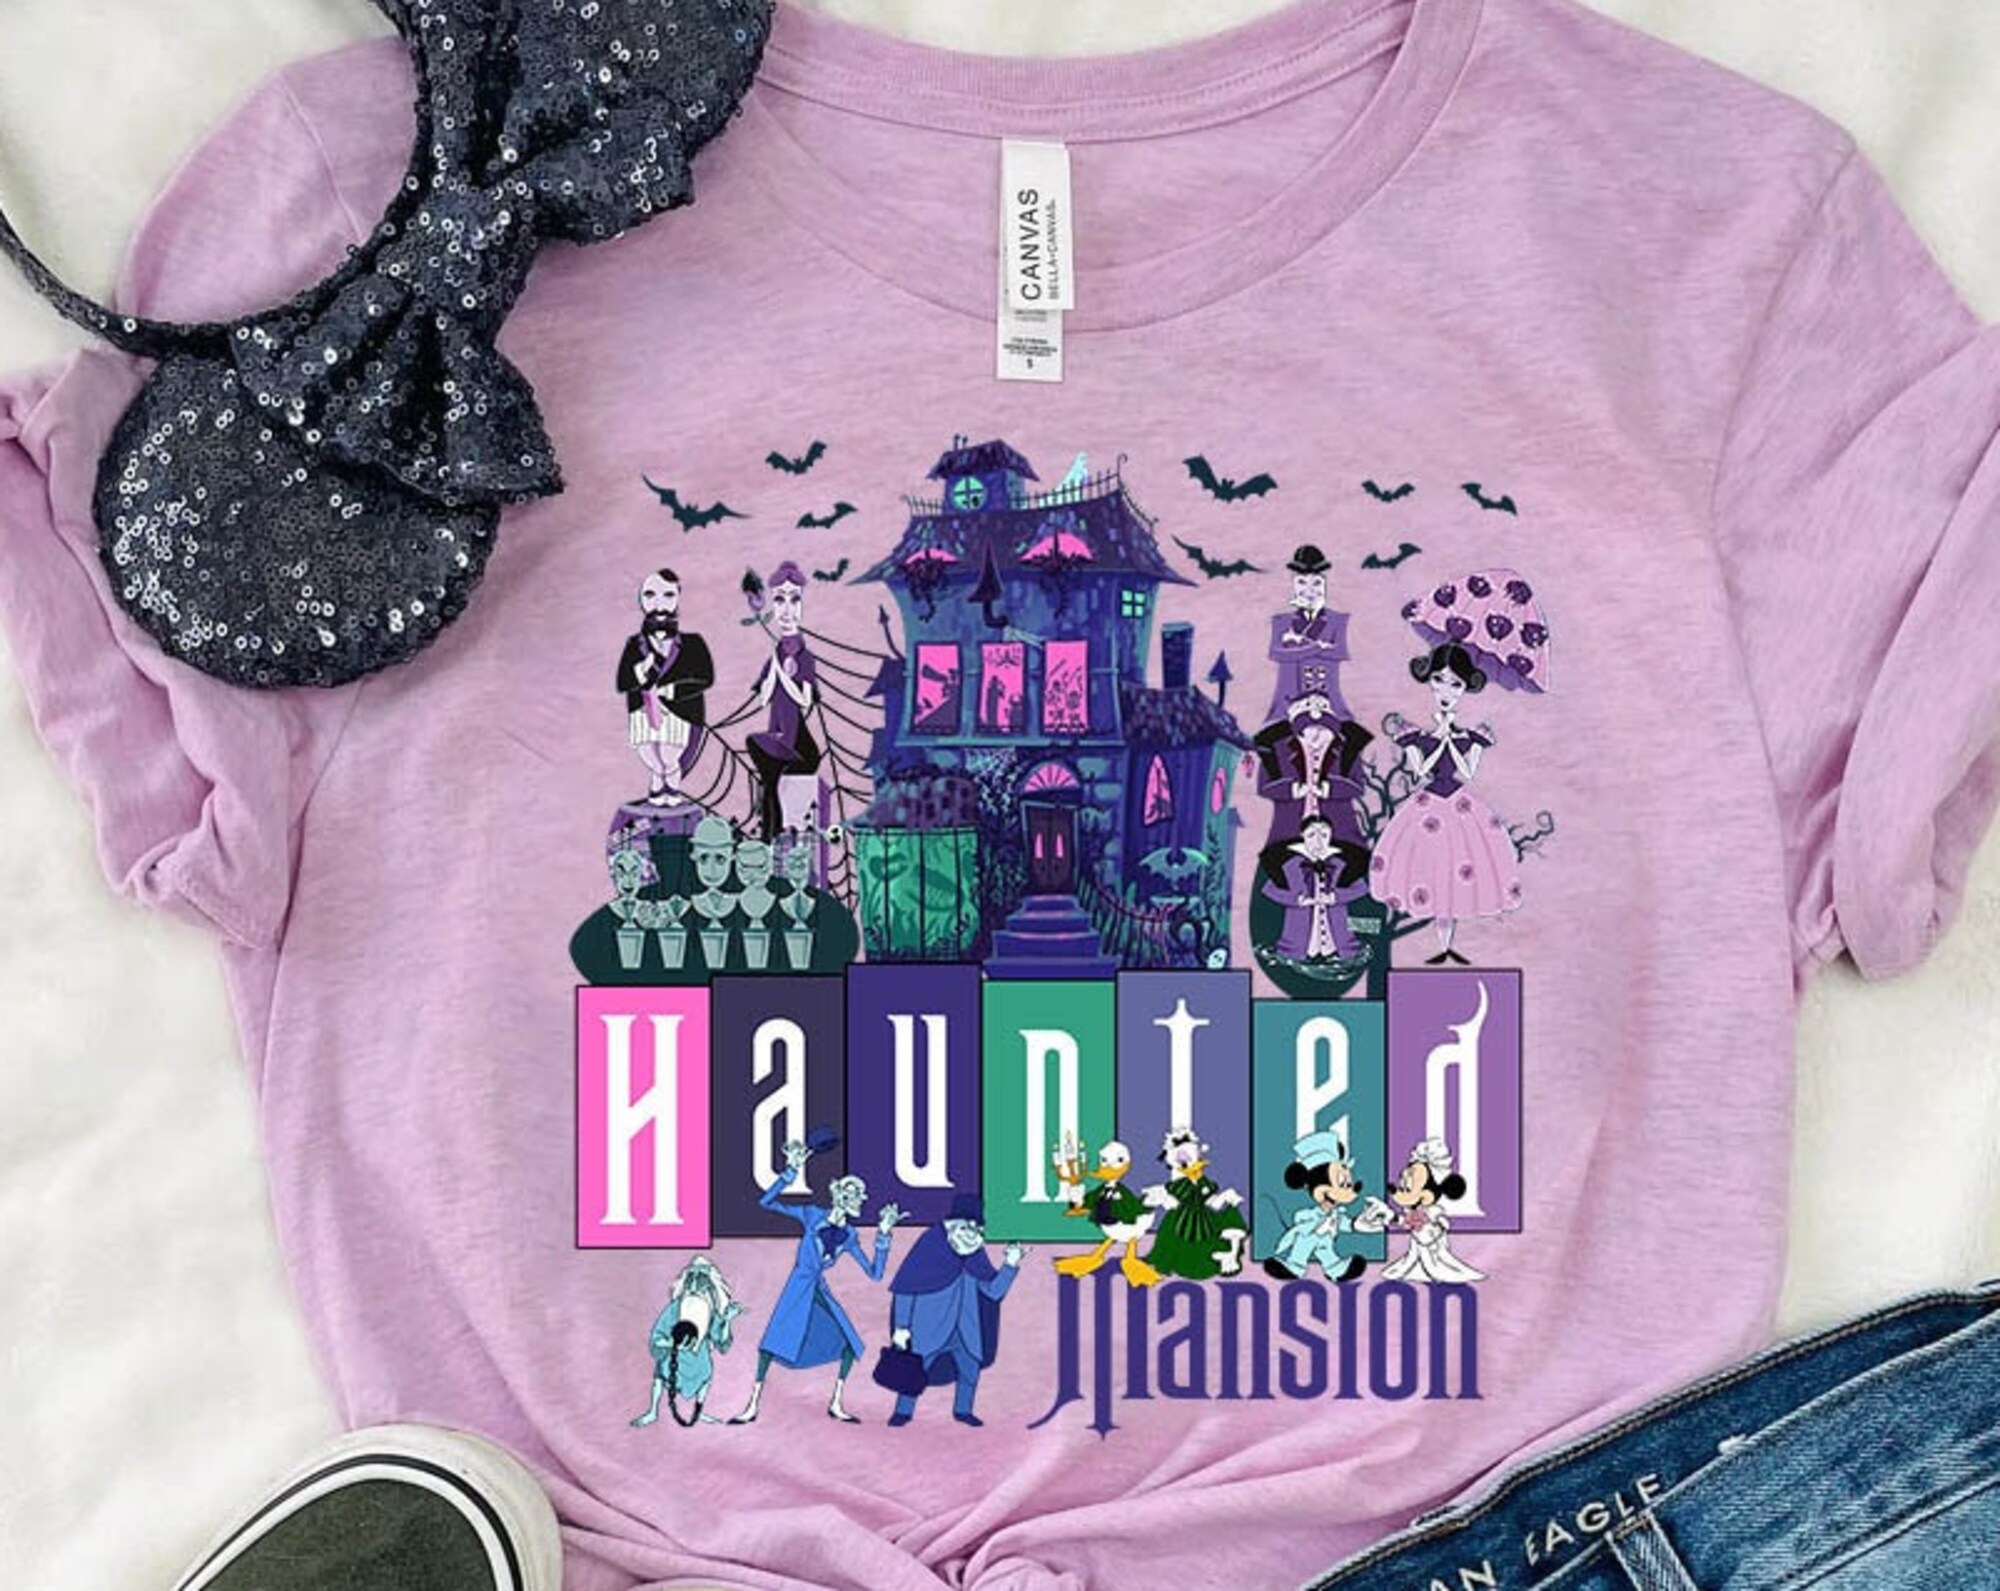 Haunted Mansion Shirt, Vintage The Haunted Mansion Shirt, Vintage Walt Disney World Shirt, Disney Retro Shirt, Welcome Foolish Mortals Shirt